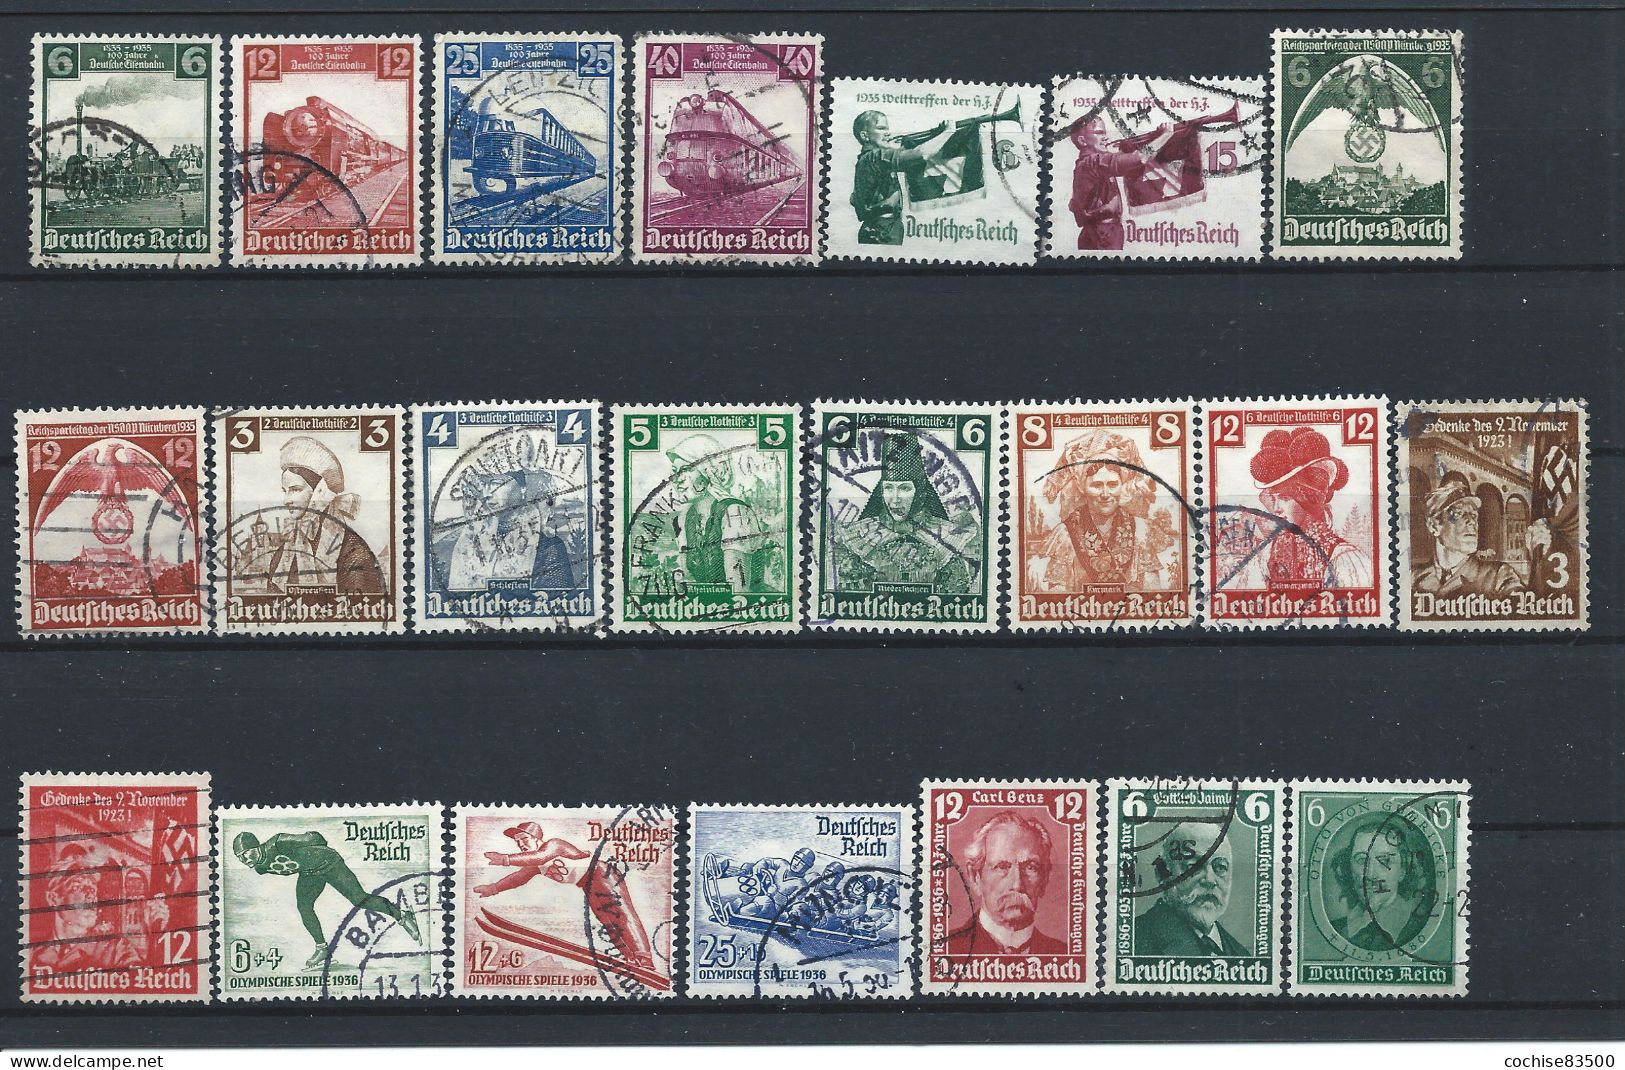 Allemagne Empire Lot 22 Tp Obl (FU) Année 1935/36 - Sujets Divers - Used Stamps